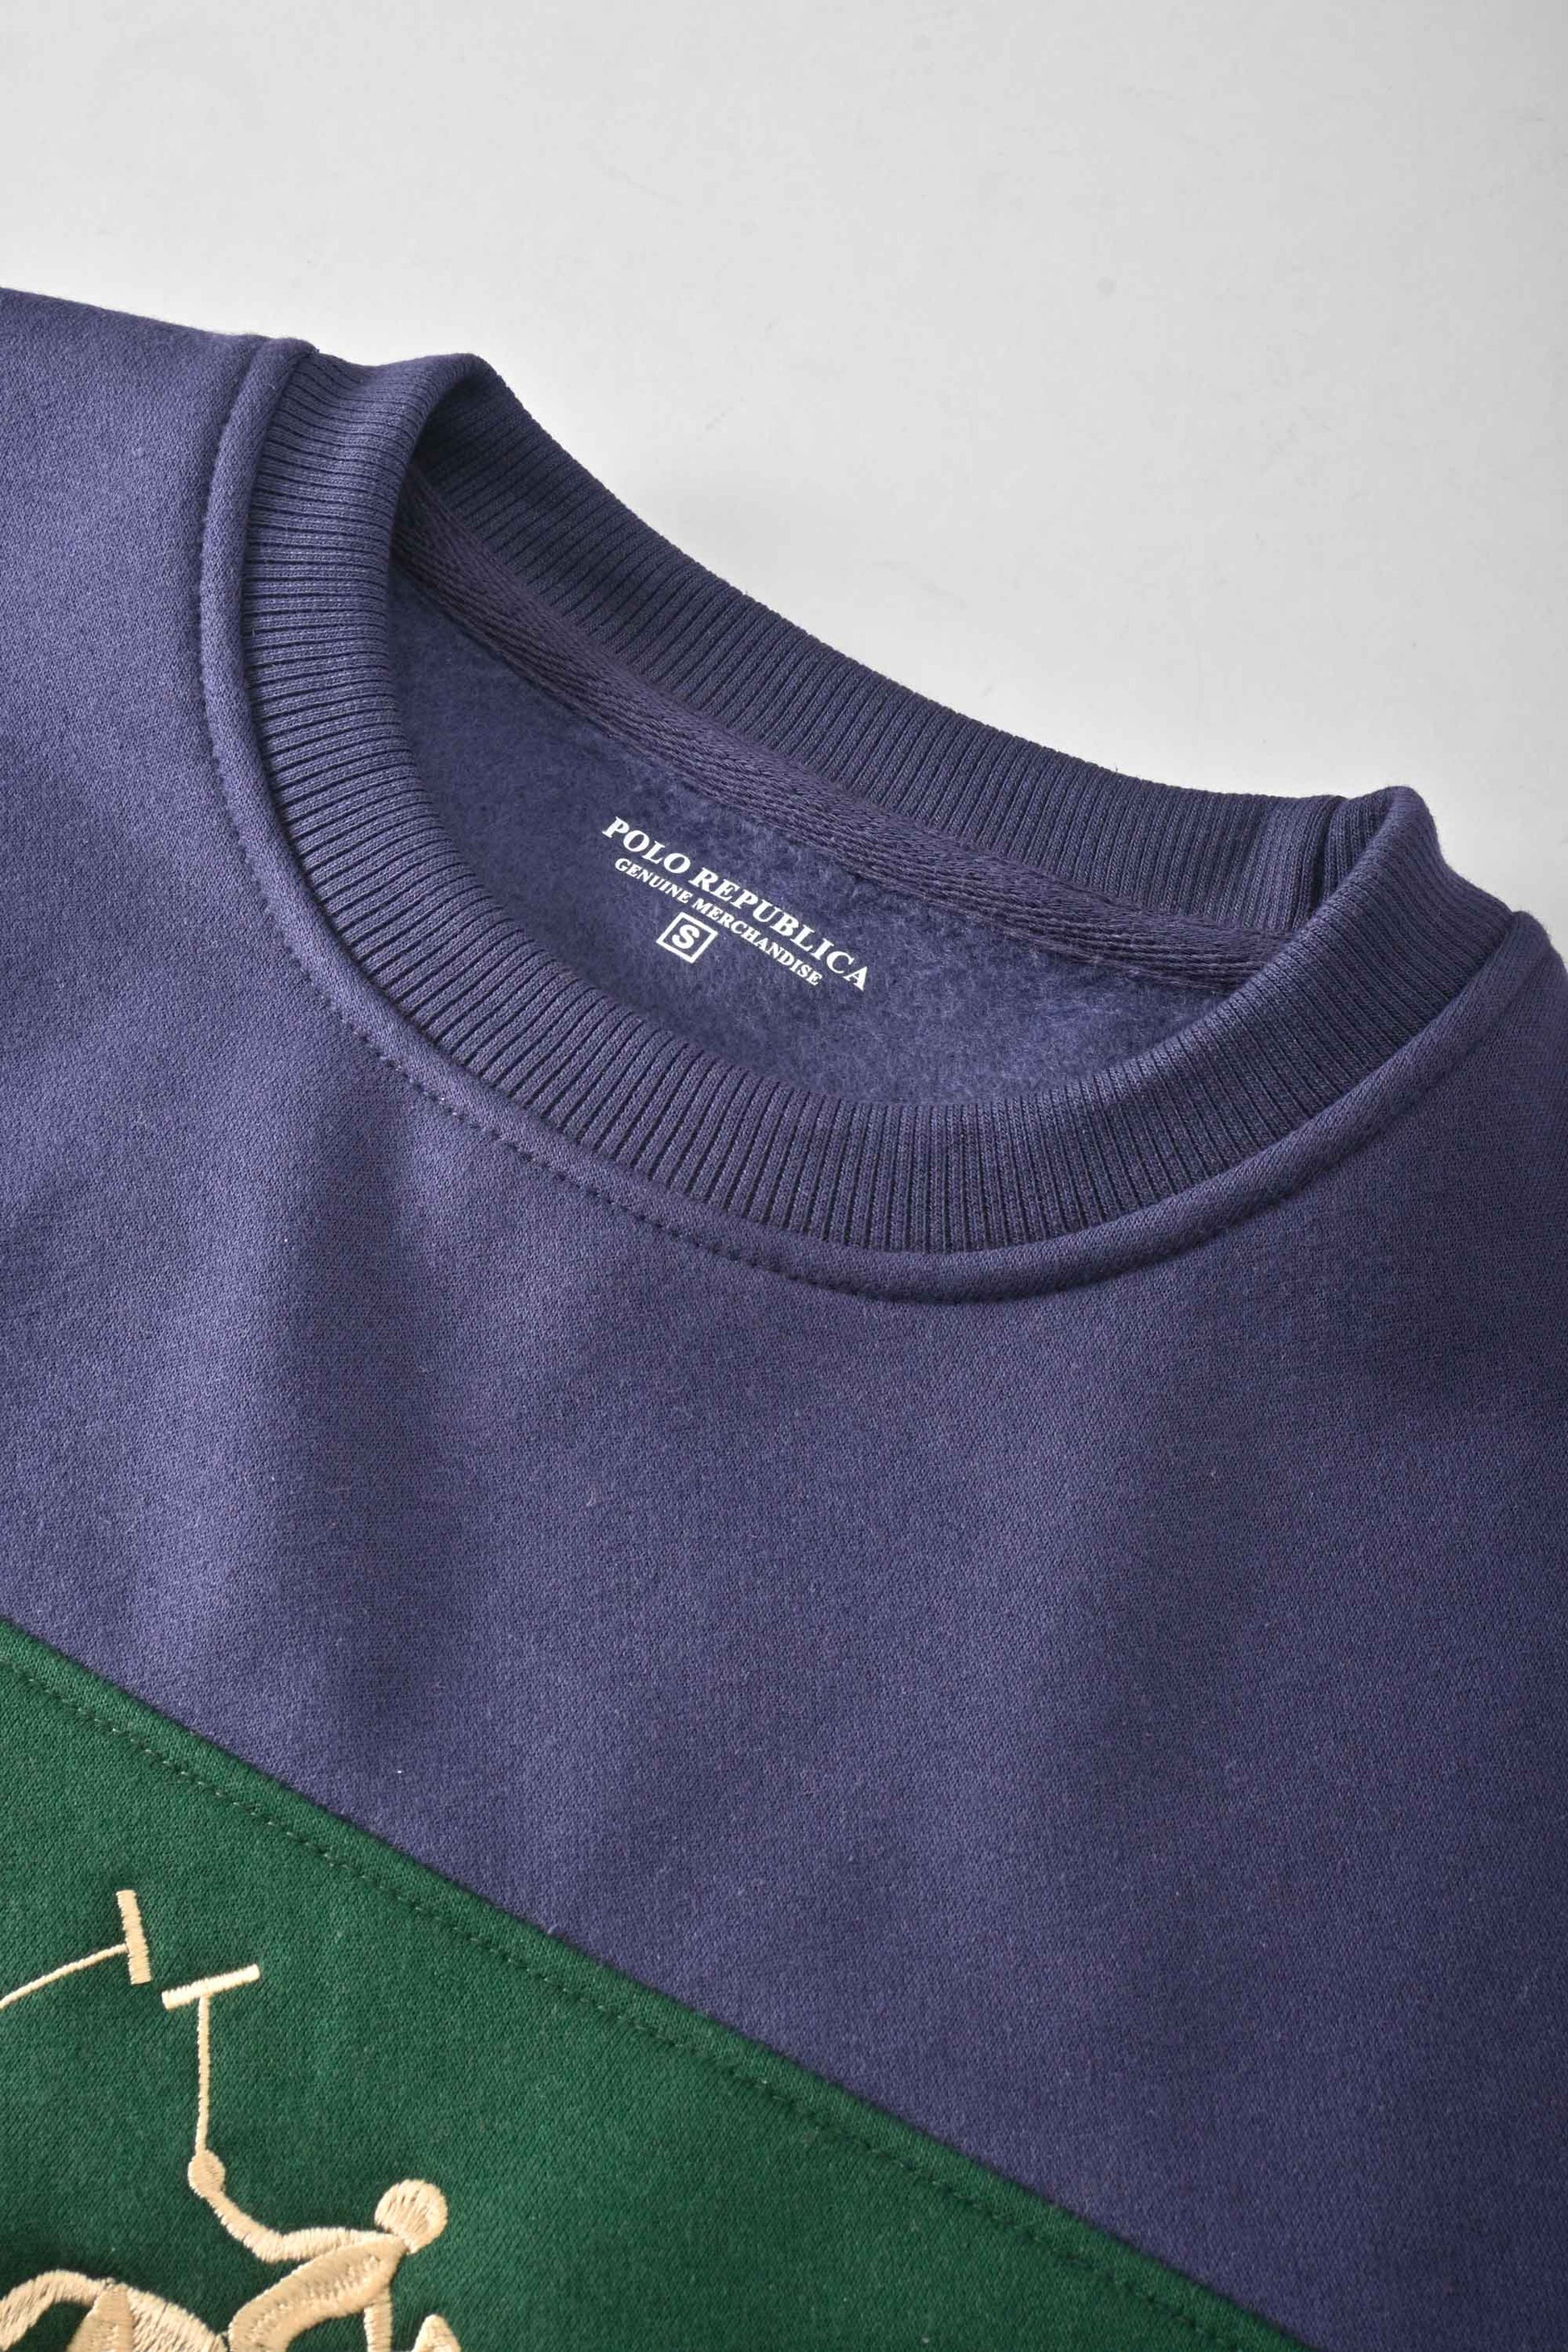 Polo Republica Men's Panel Design Double Horse Embroidered Fleece Sweat Shirt Men's Sweat Shirt Polo Republica 